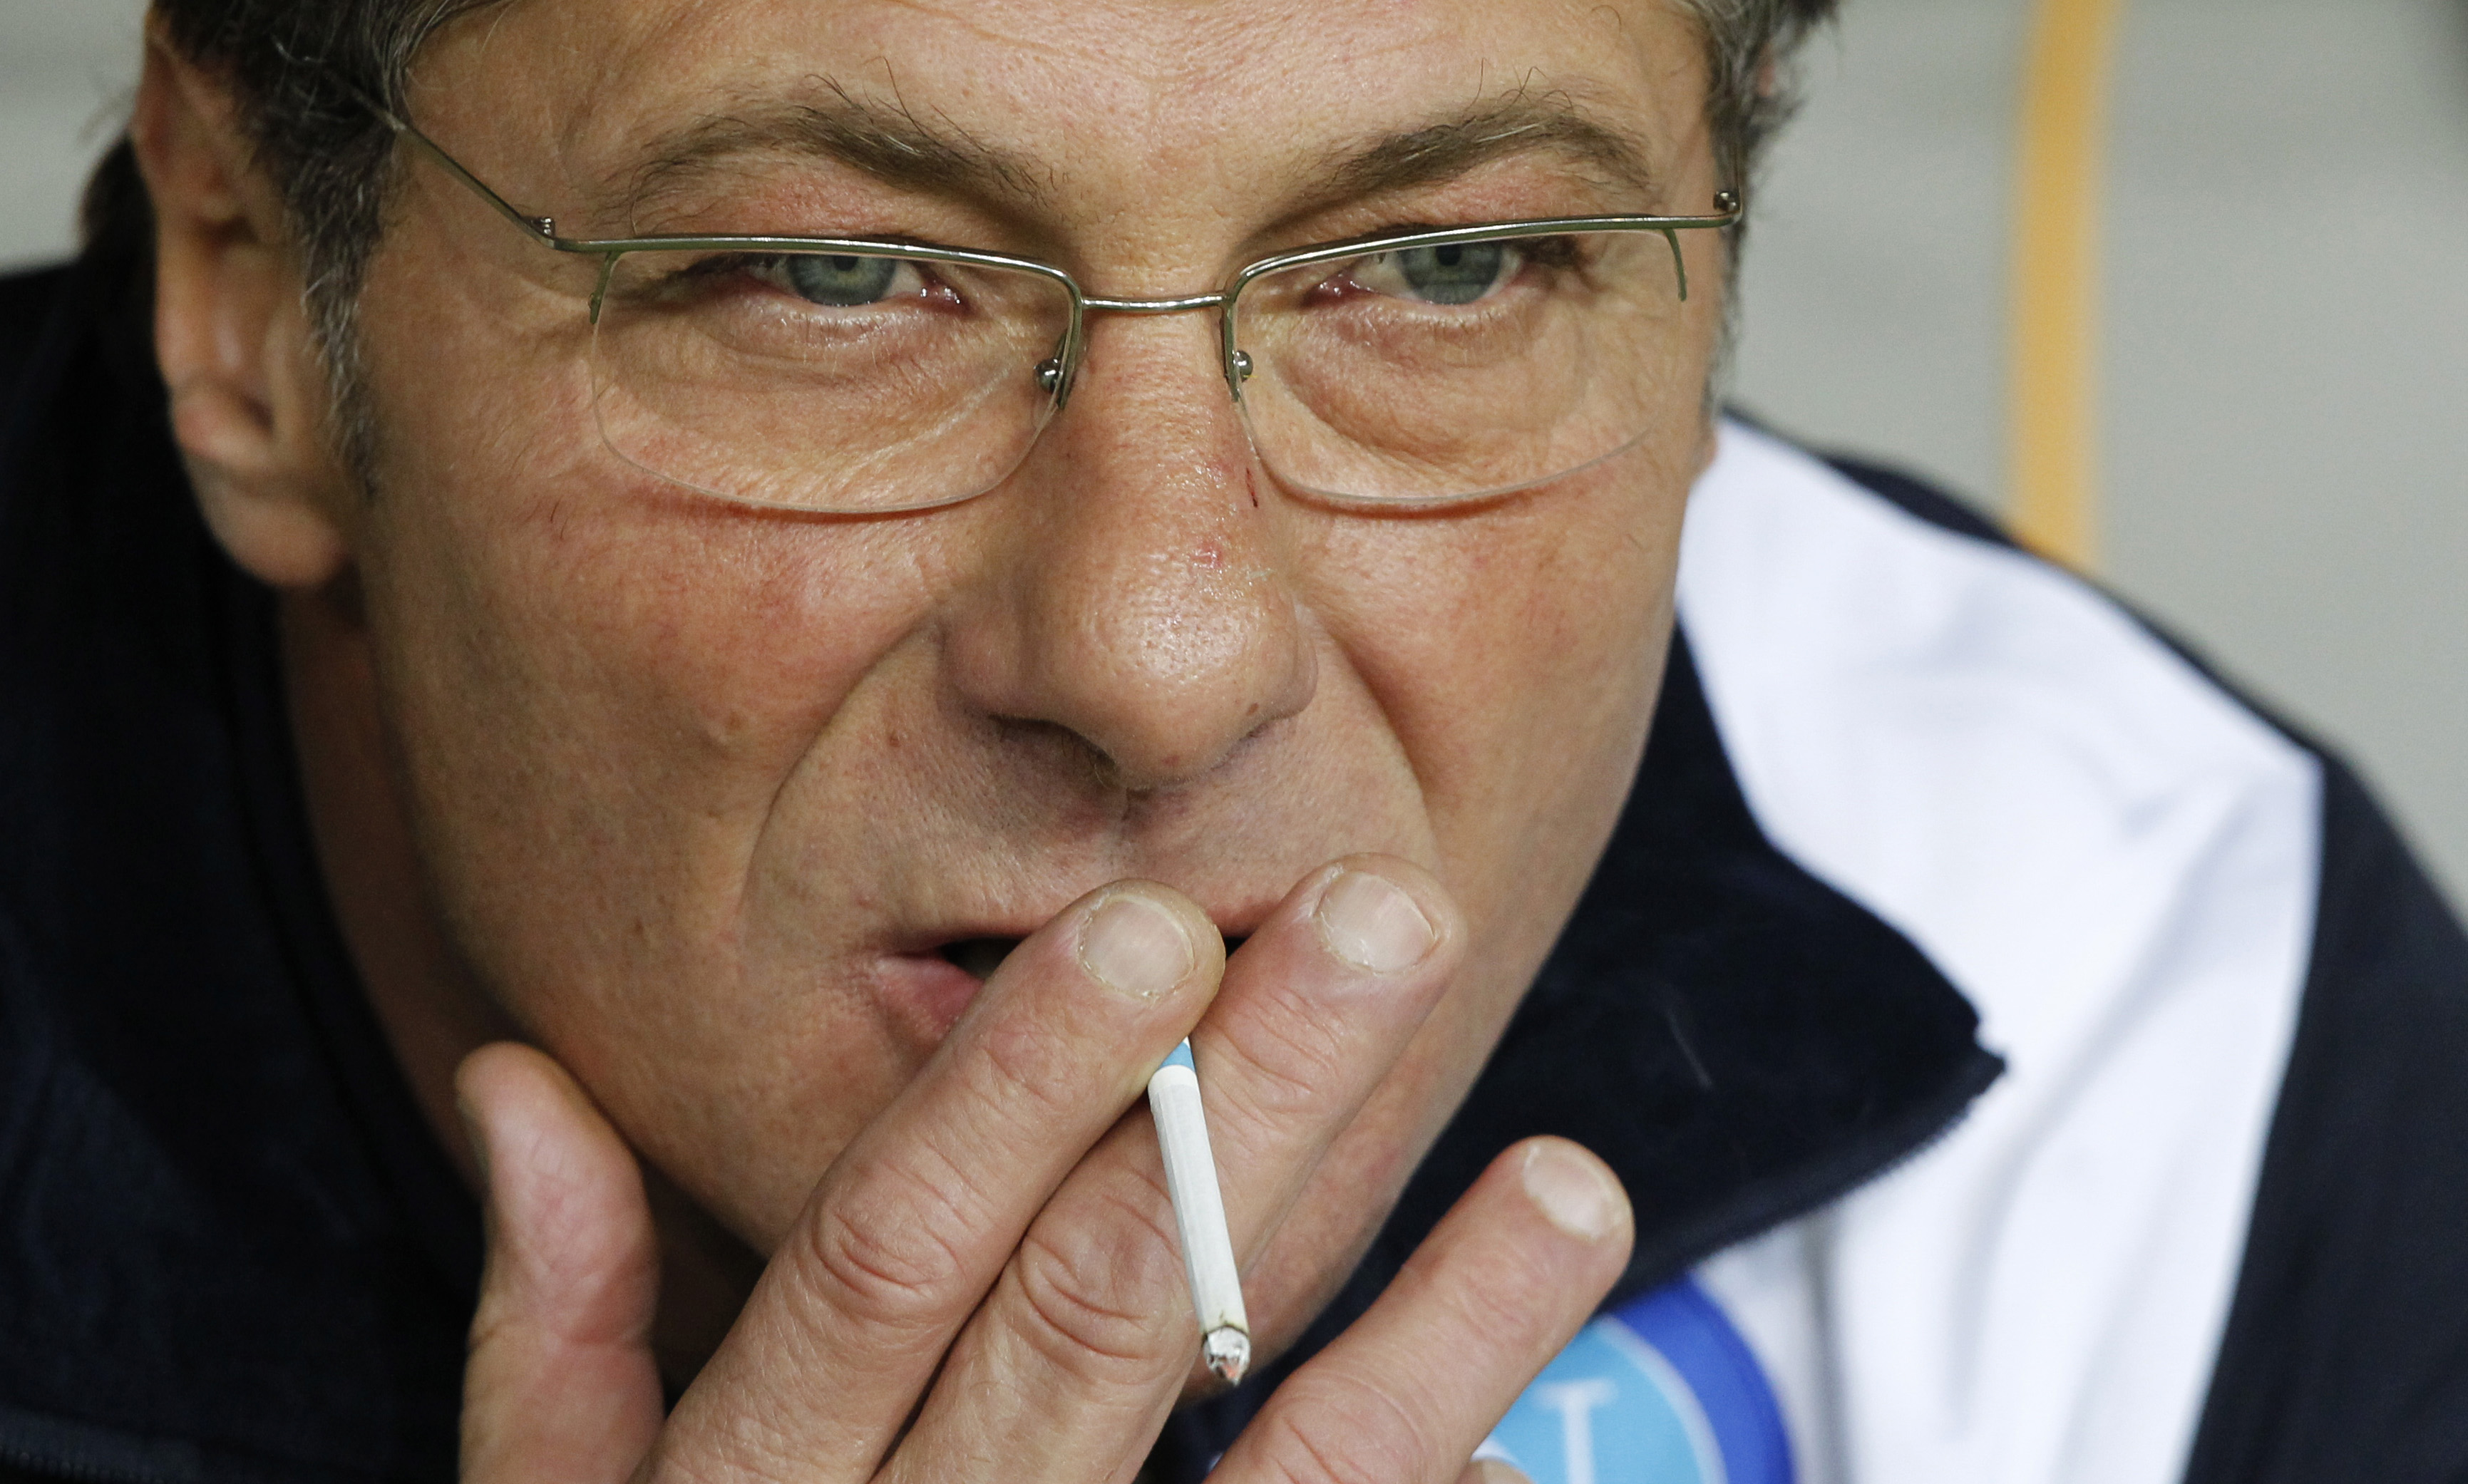 Walter Mazzarri unnar sig en och annan cigarett när Napolis matcher blir för spännande, blir det så även mot AIK?